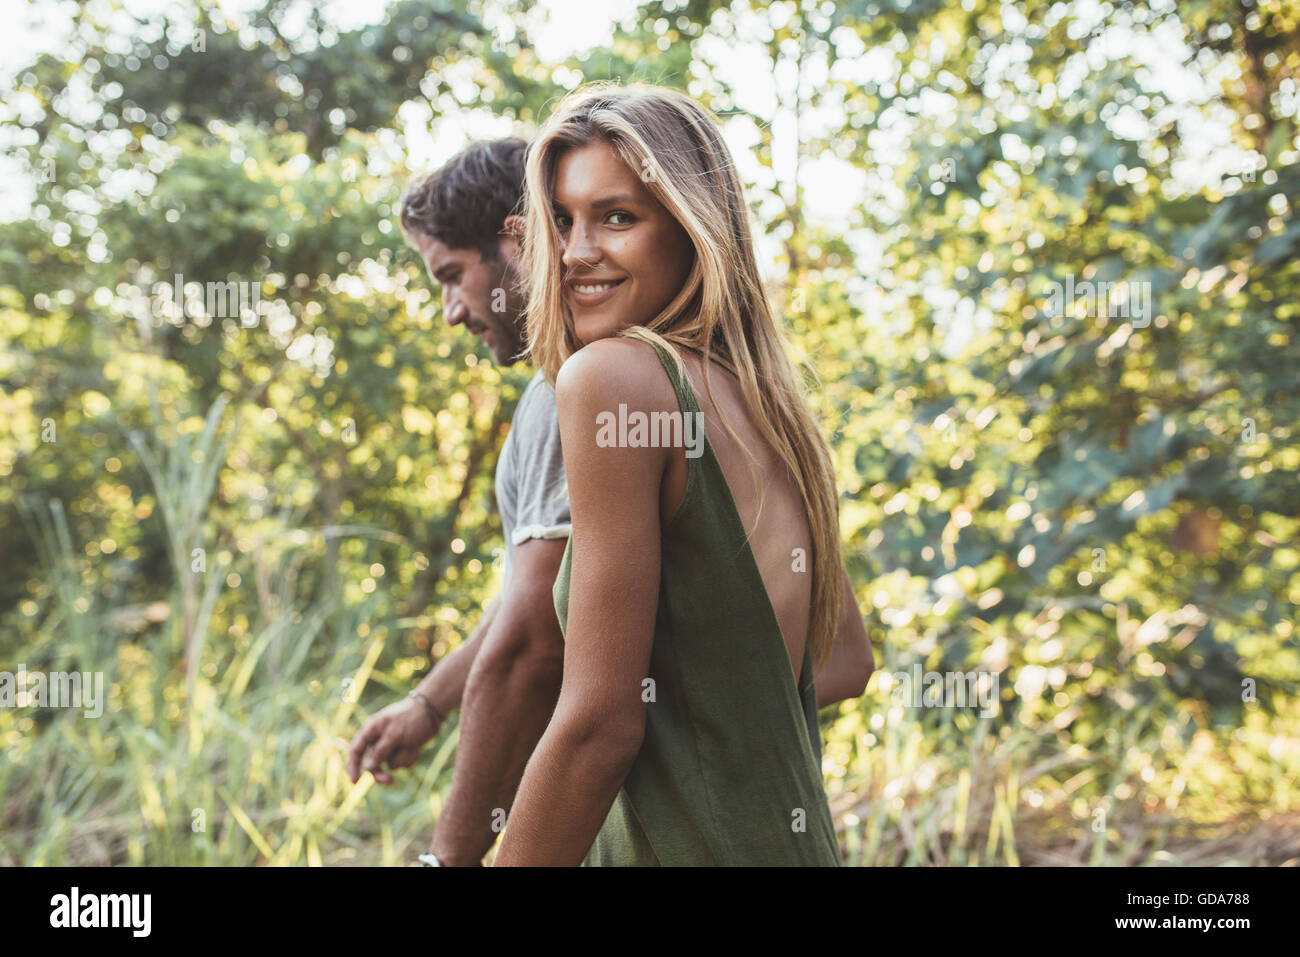 Porträt von attraktiven jungen Frau zu Fuß mit ihrem Freund im Freien. Junges Paar zusammen, in der Landschaft. Stockfoto